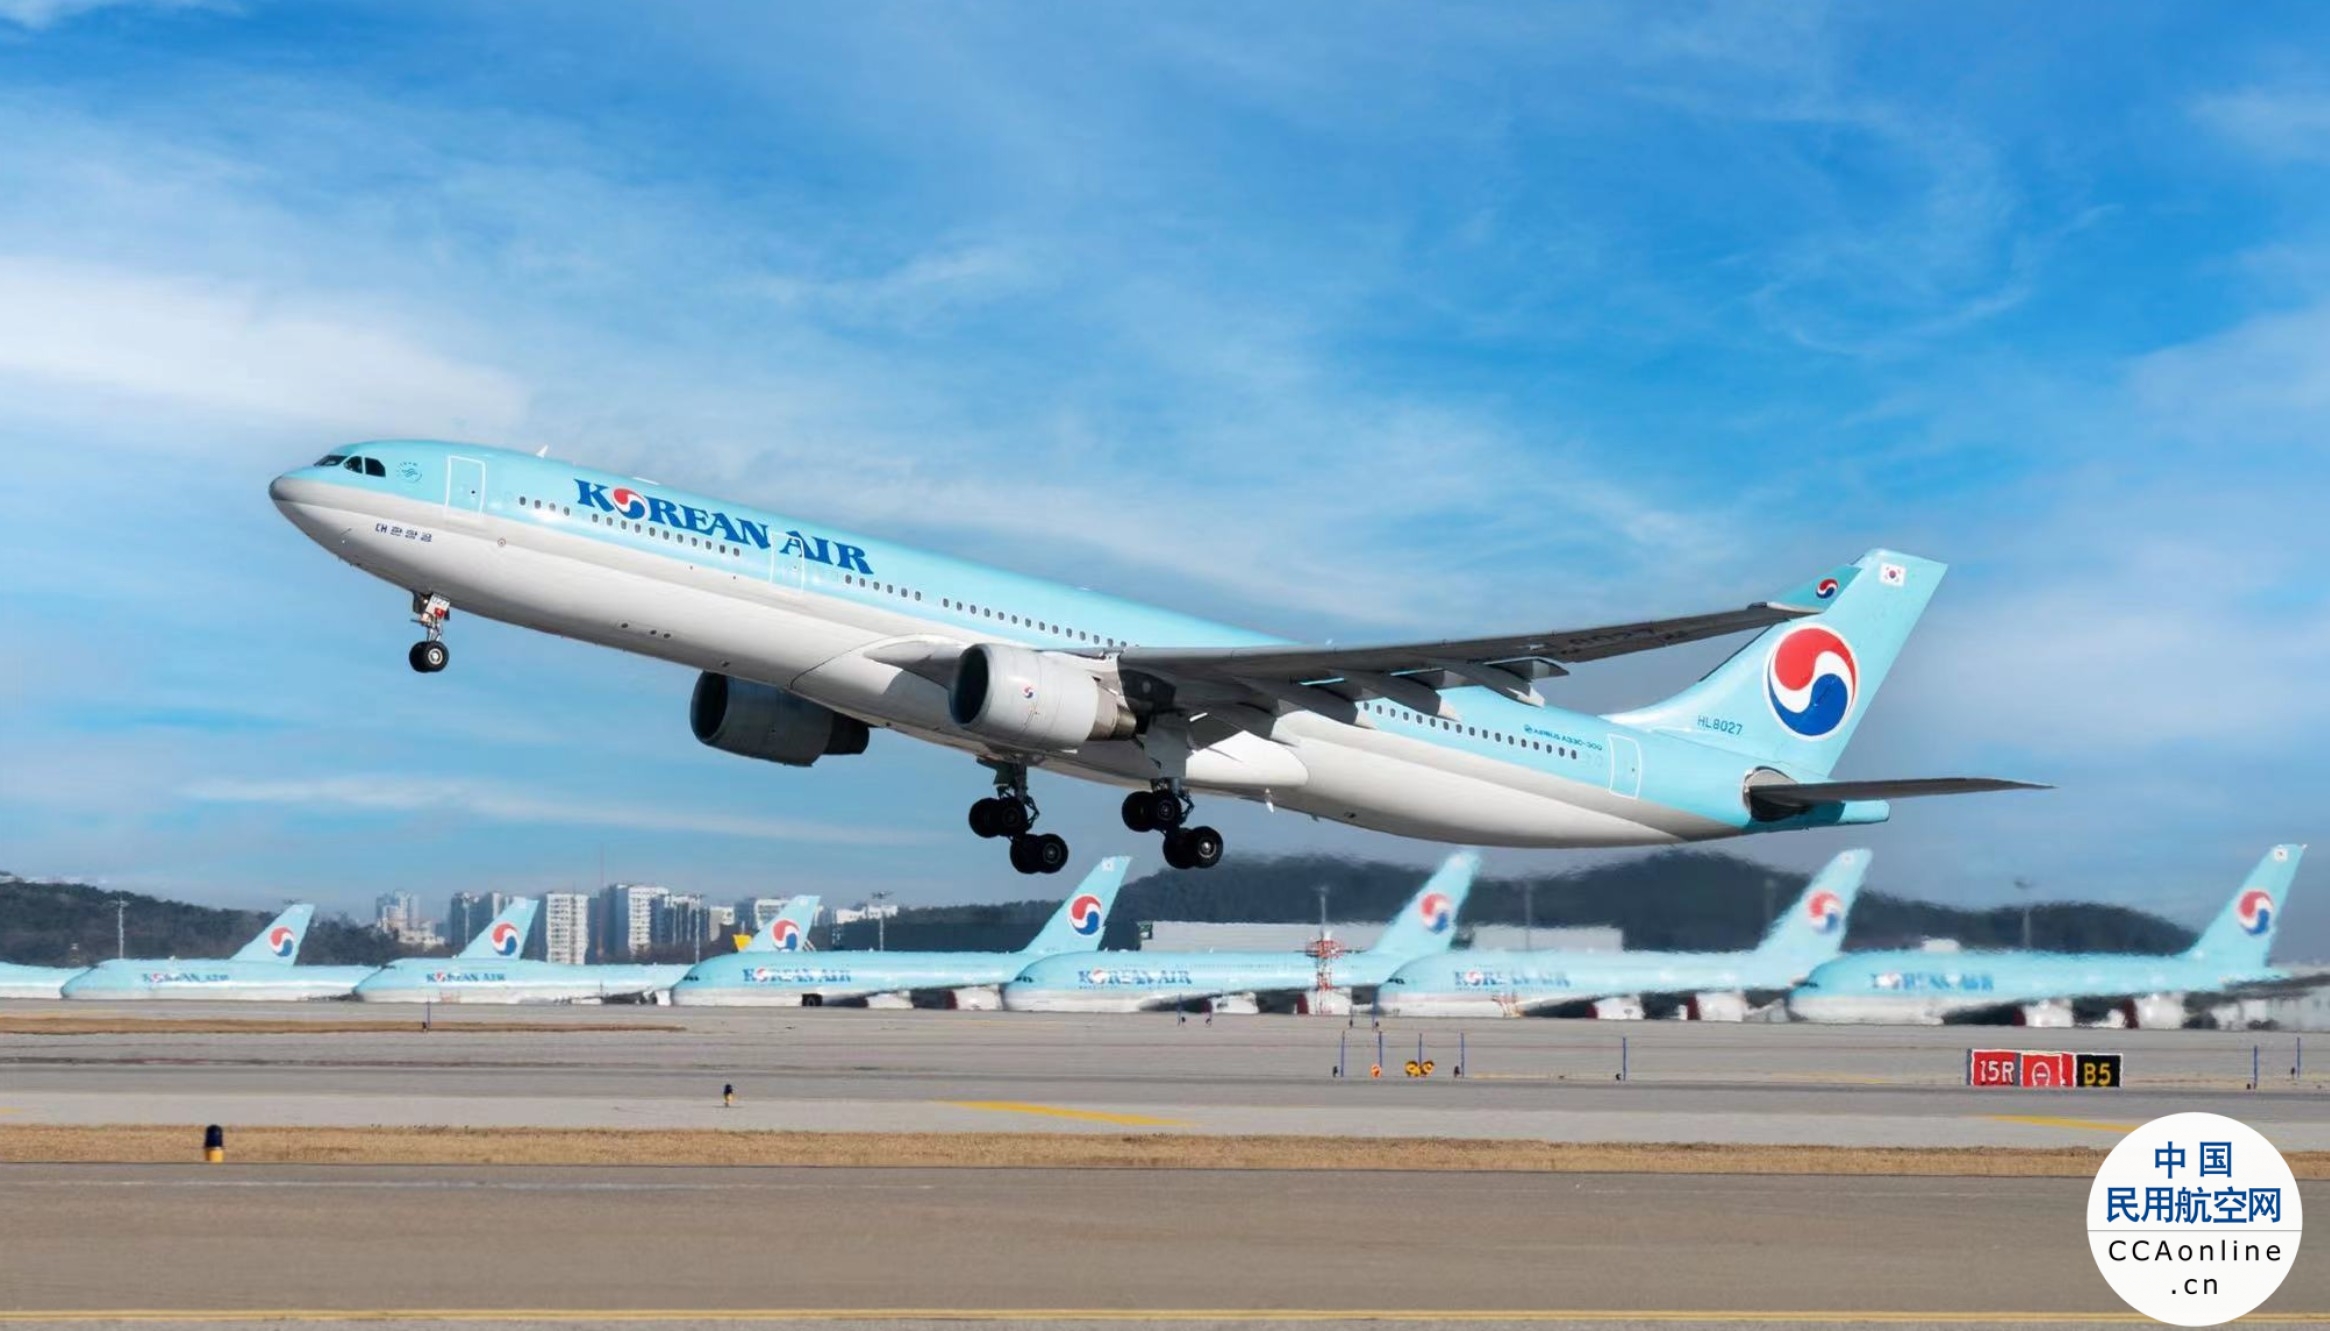 大韩航空一客机机舱内发现猎枪子弹 警方展开调查